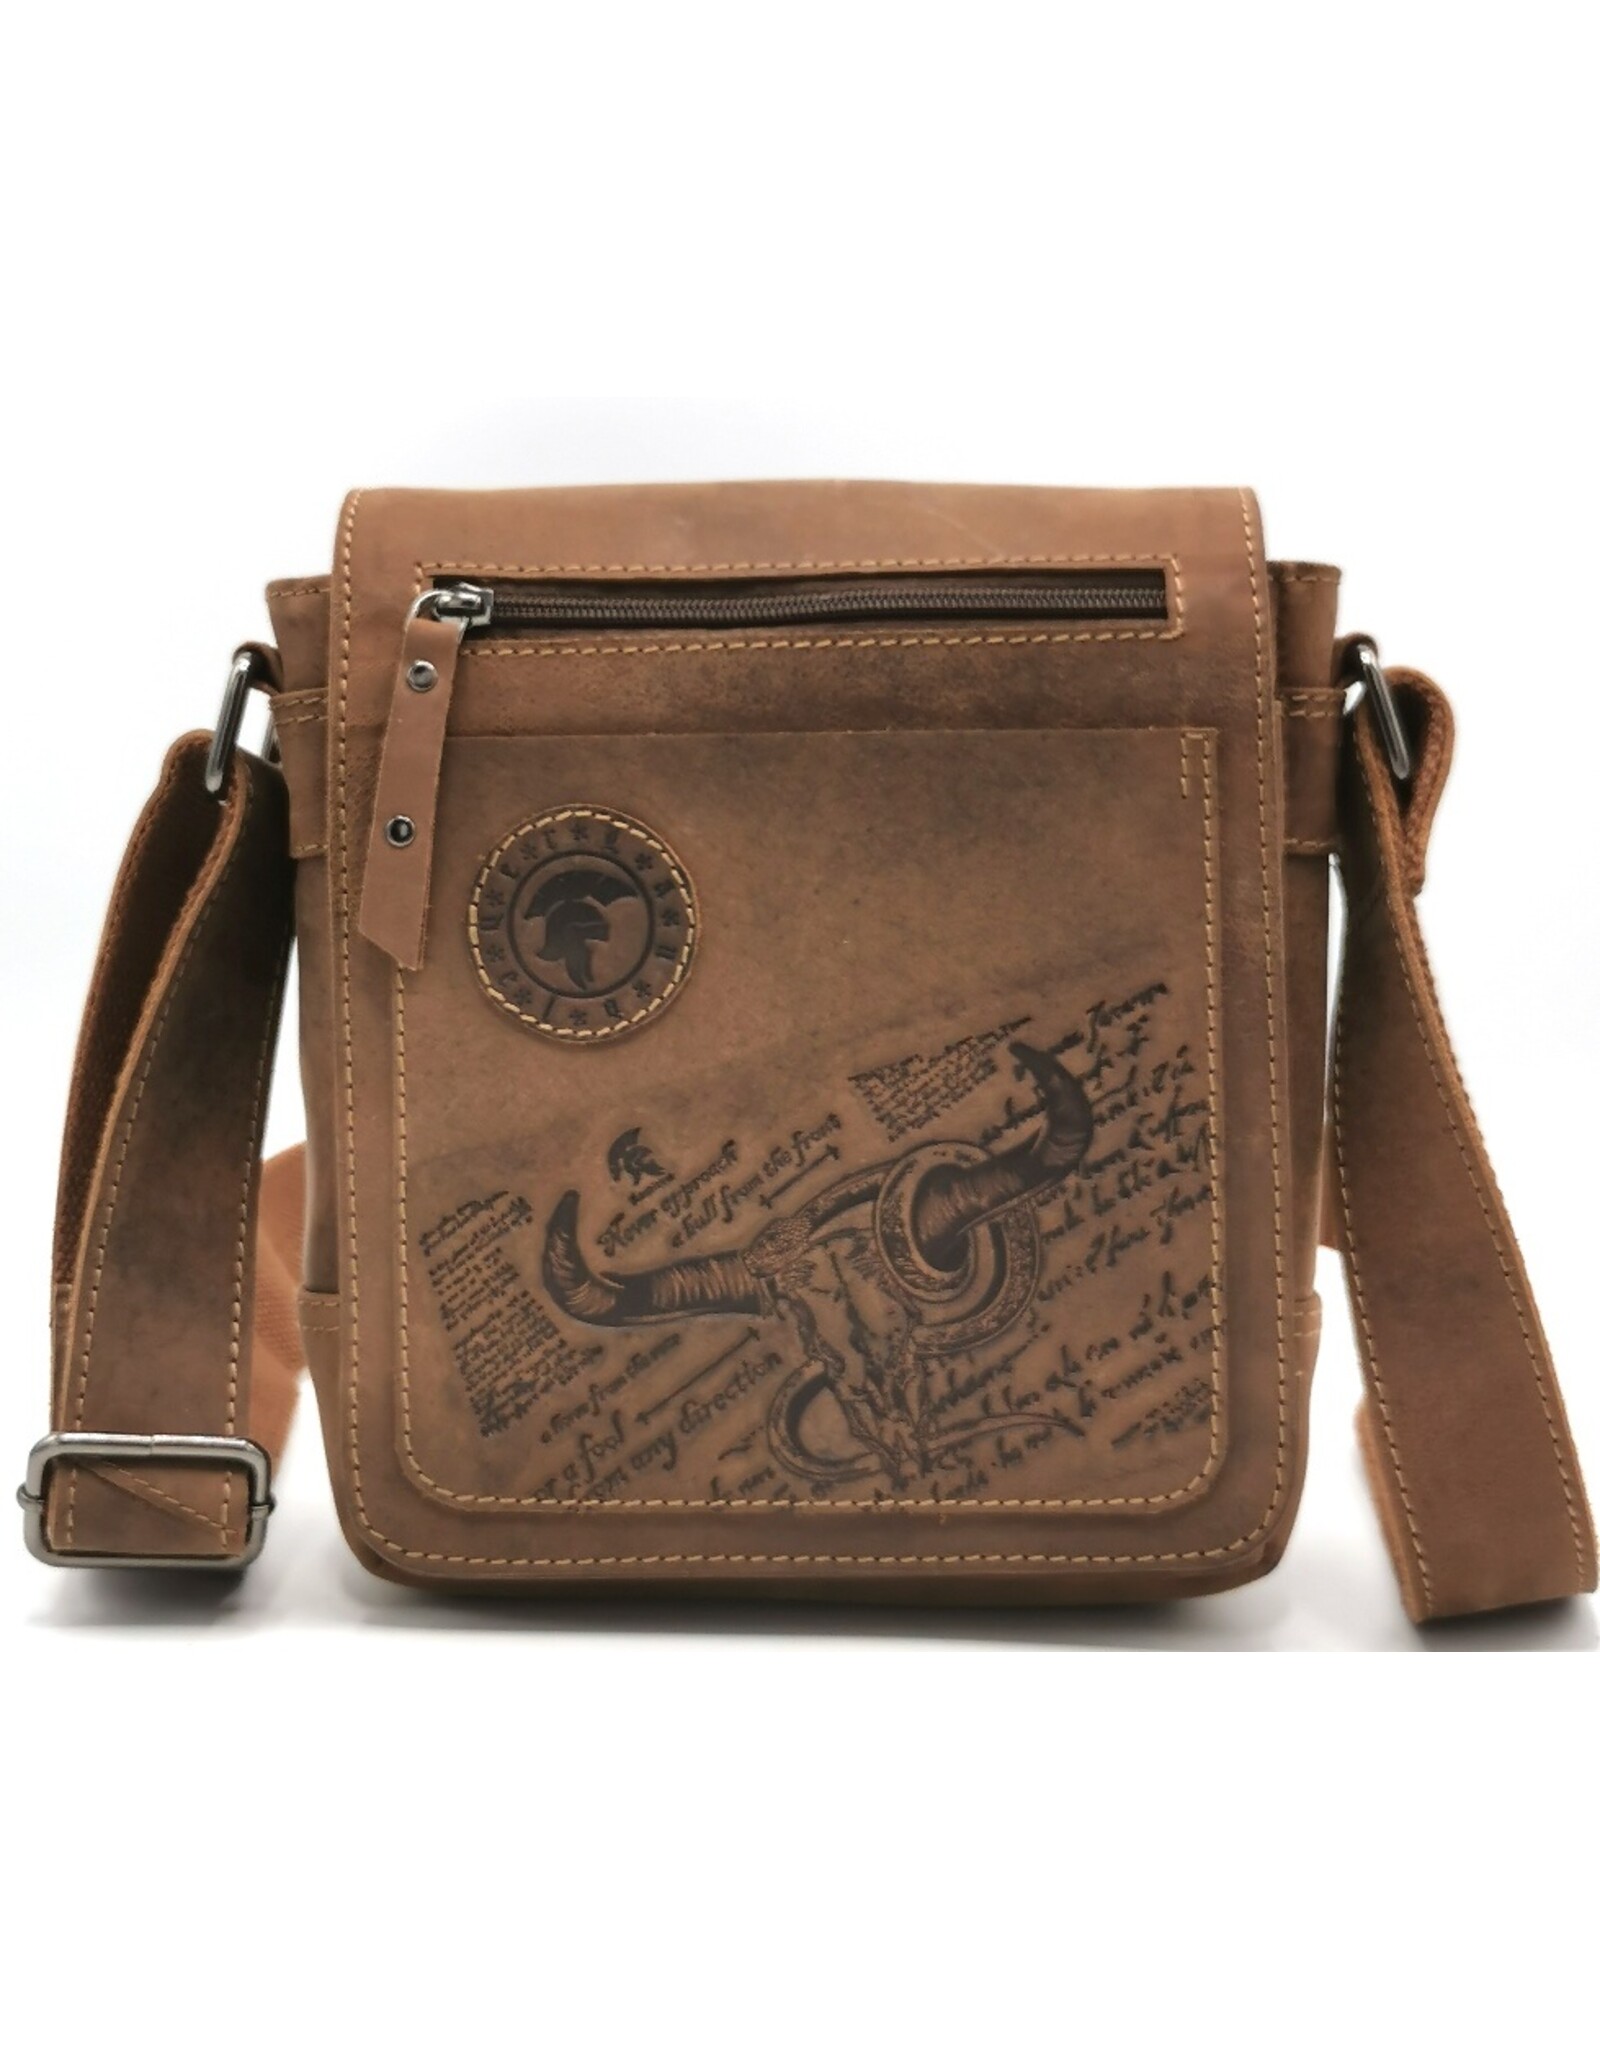 LandLeder Leather bags - Shoulder bag with cover BULL & SNAKE